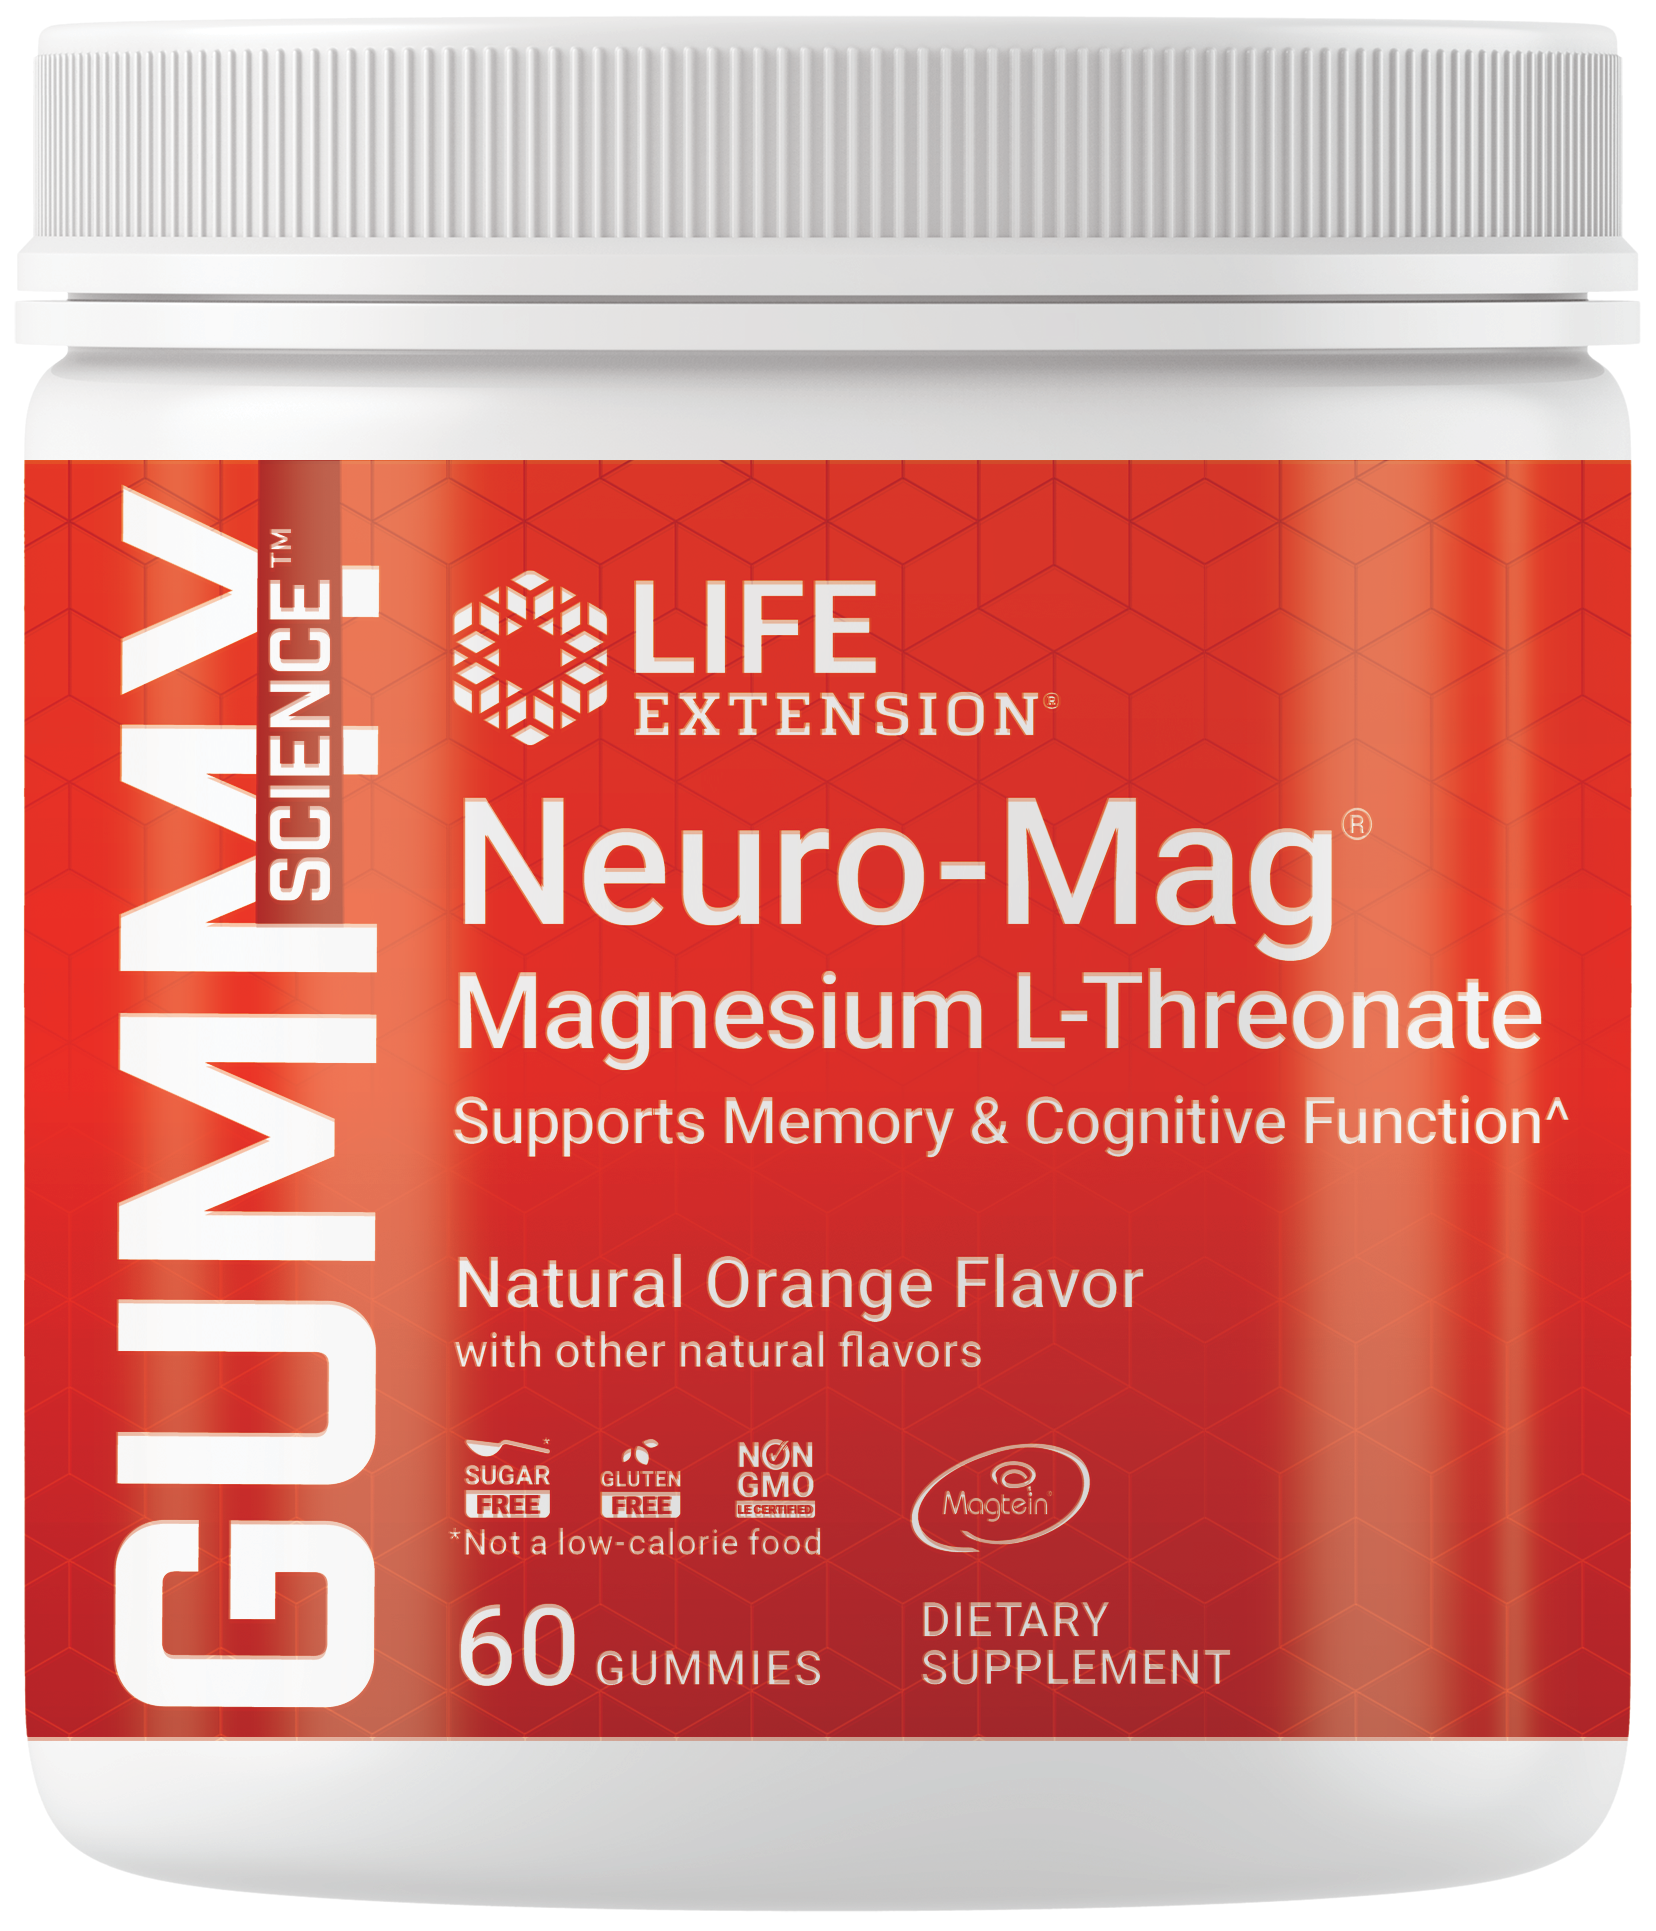 Gummy Science™ Neuro-Mag® Magnesium L-Threonate, gommose senza zucchero, gusto arancia, con magnesio ultra assorbibile.